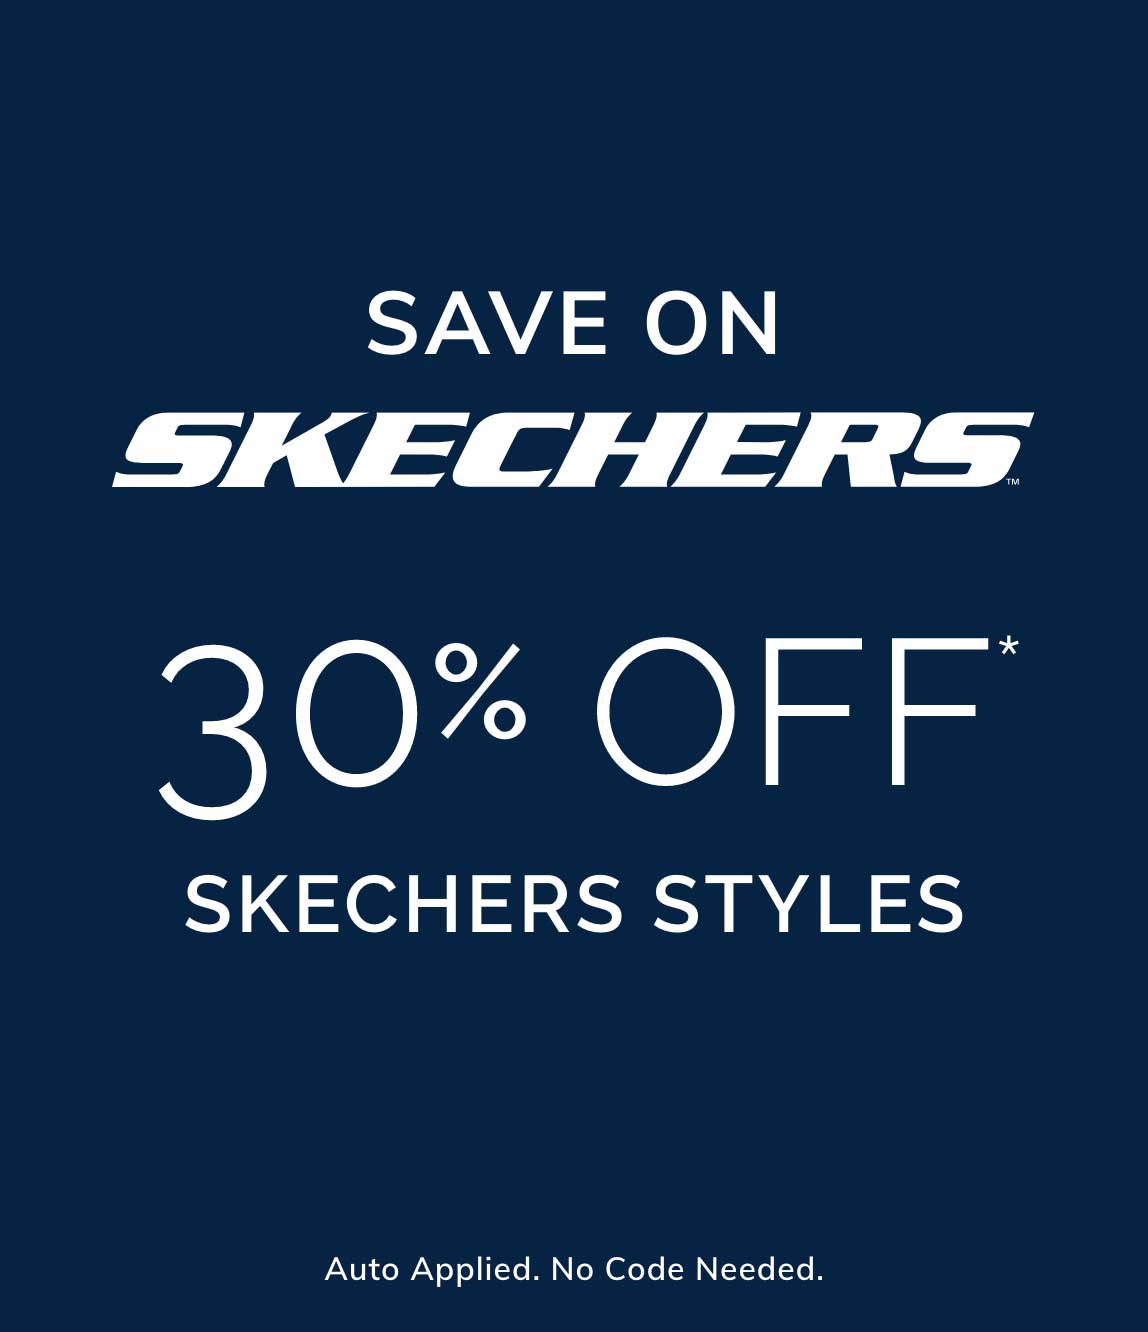 30% Off* SKECHERS Styles